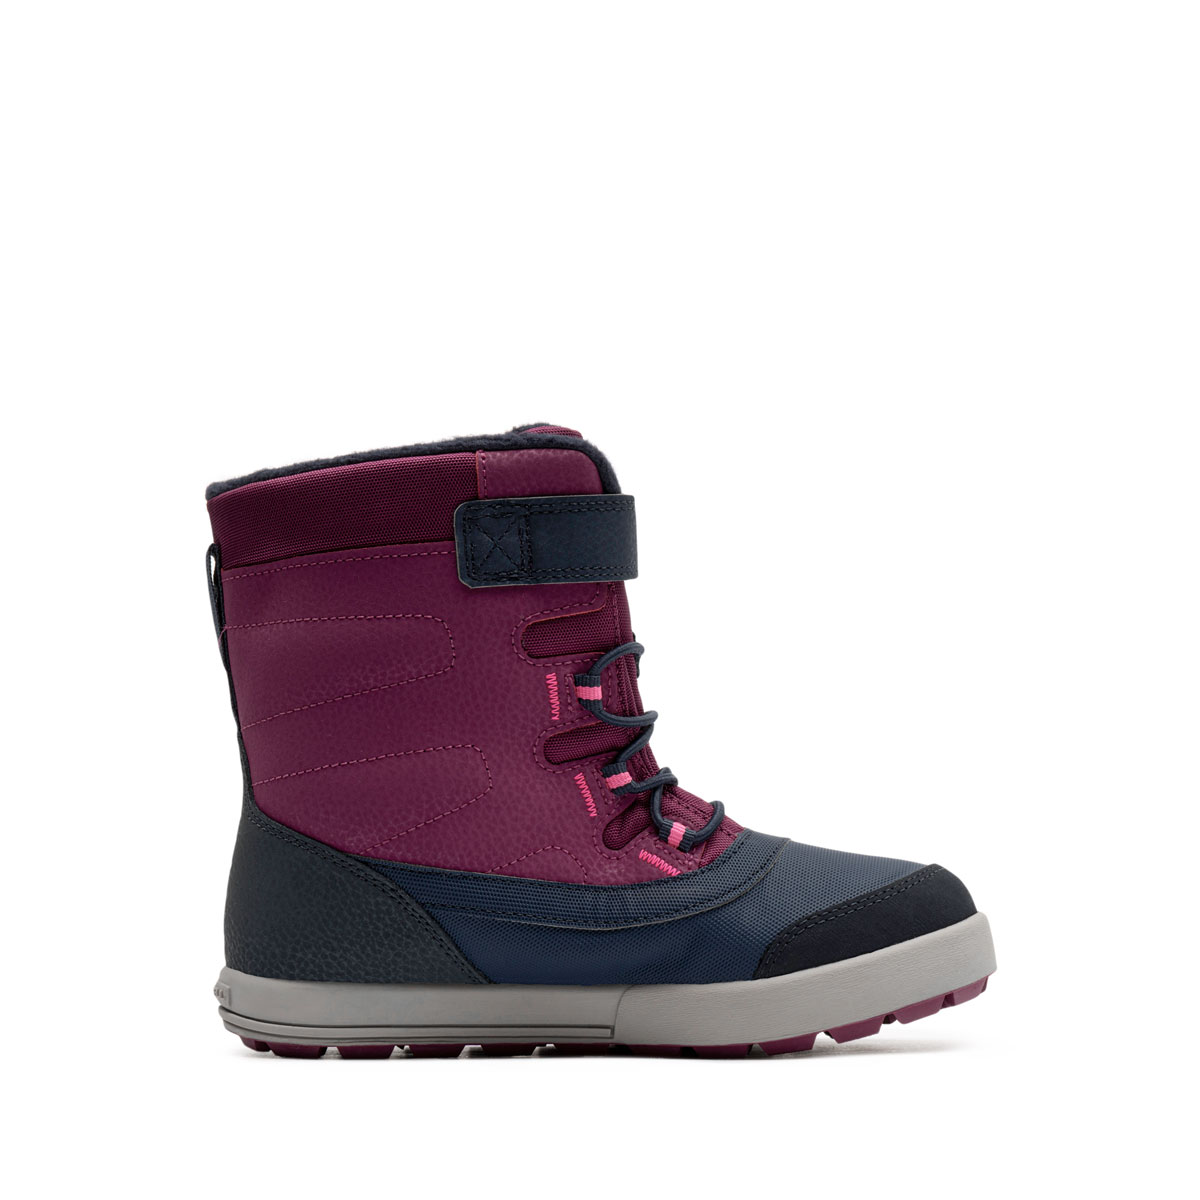 Merrell Snow Storm WaterProof Детски зимни обувки MK165206